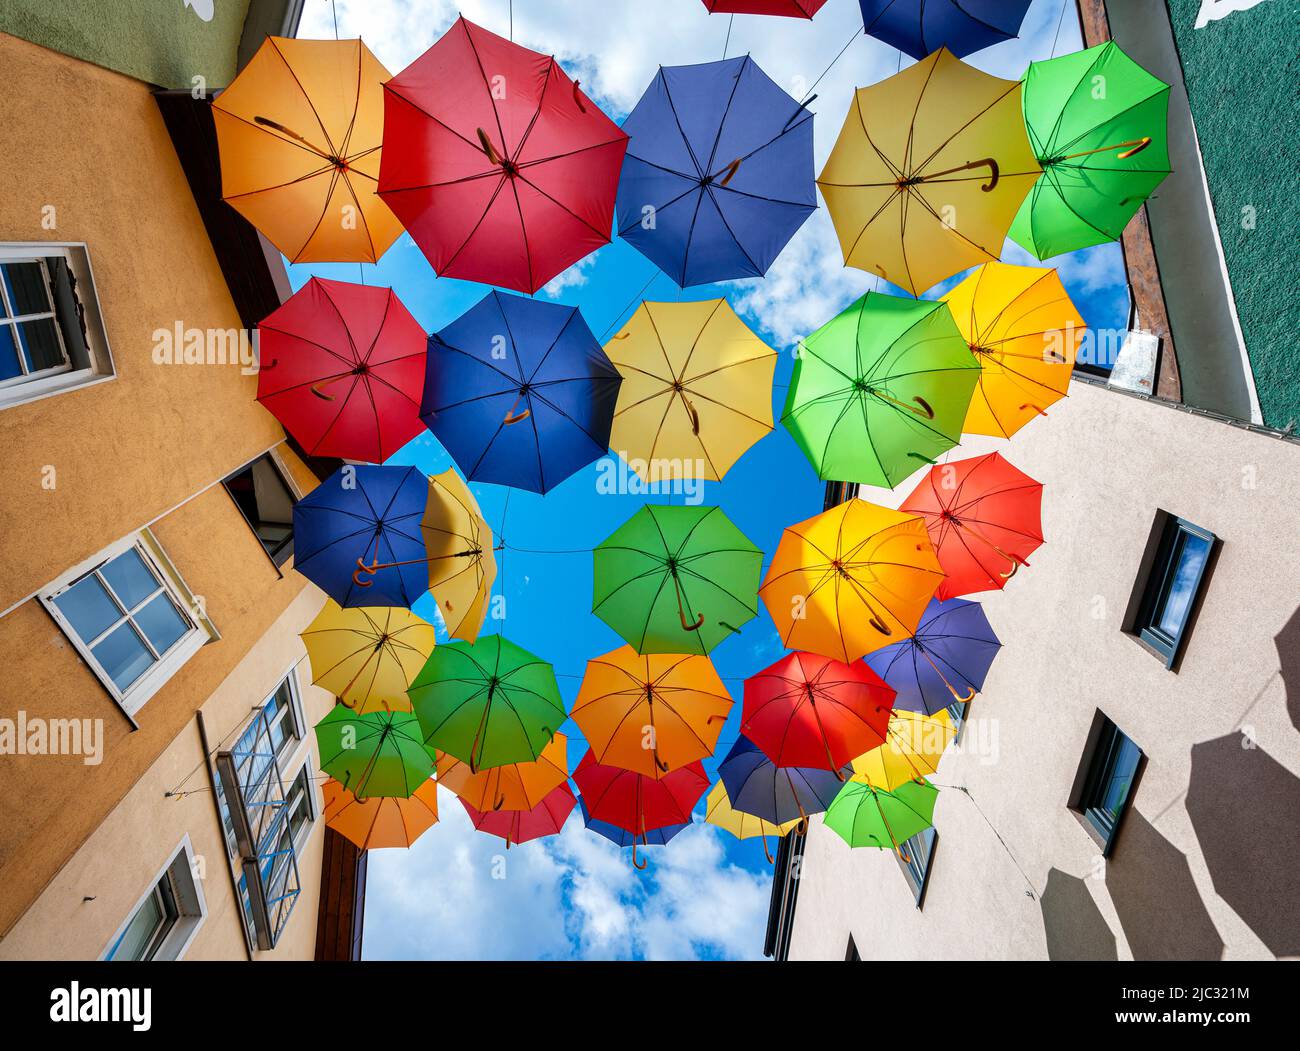 bunte Regenschirme vor blauem Himmel Foto Stock